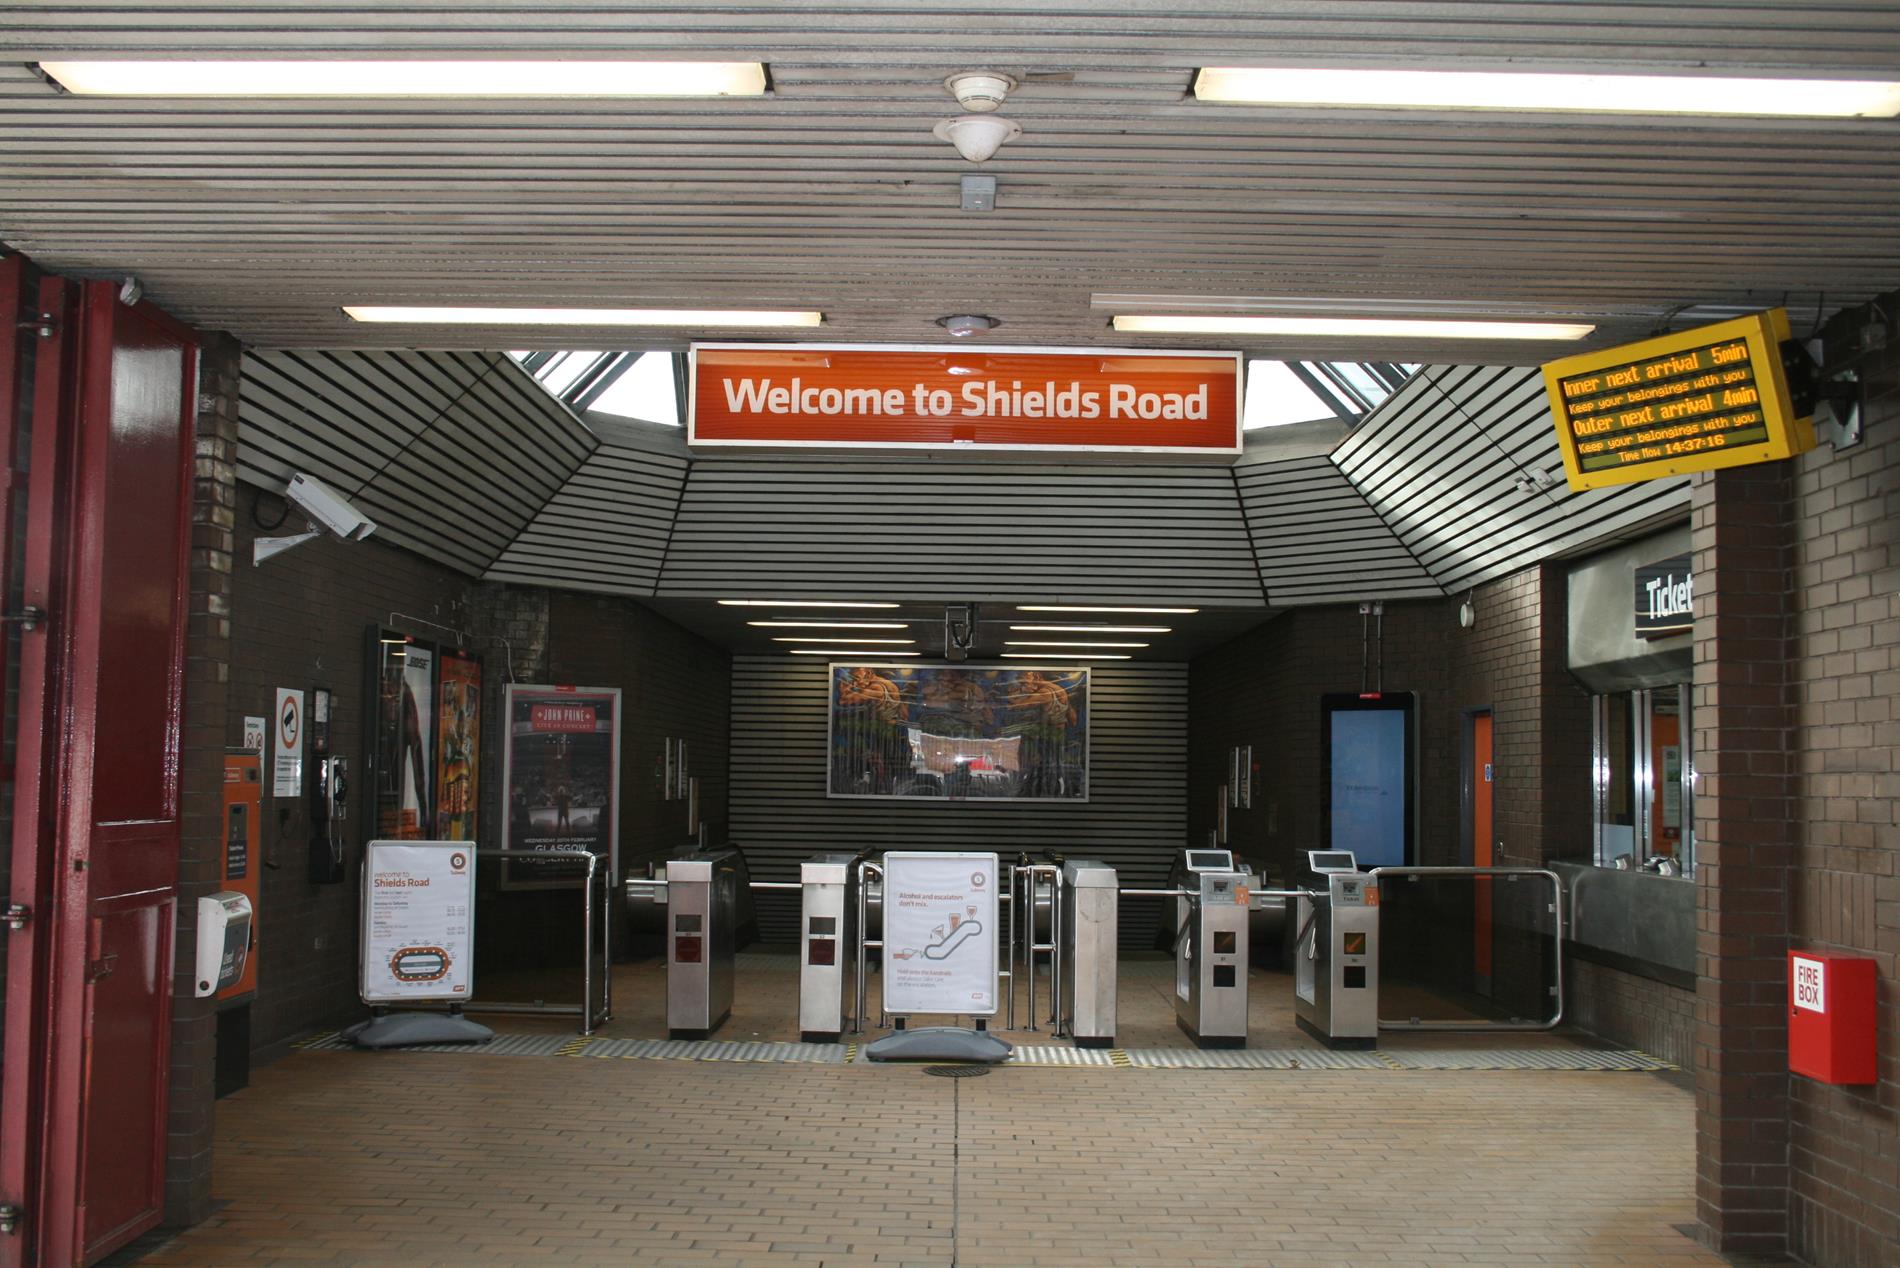 Shields Road